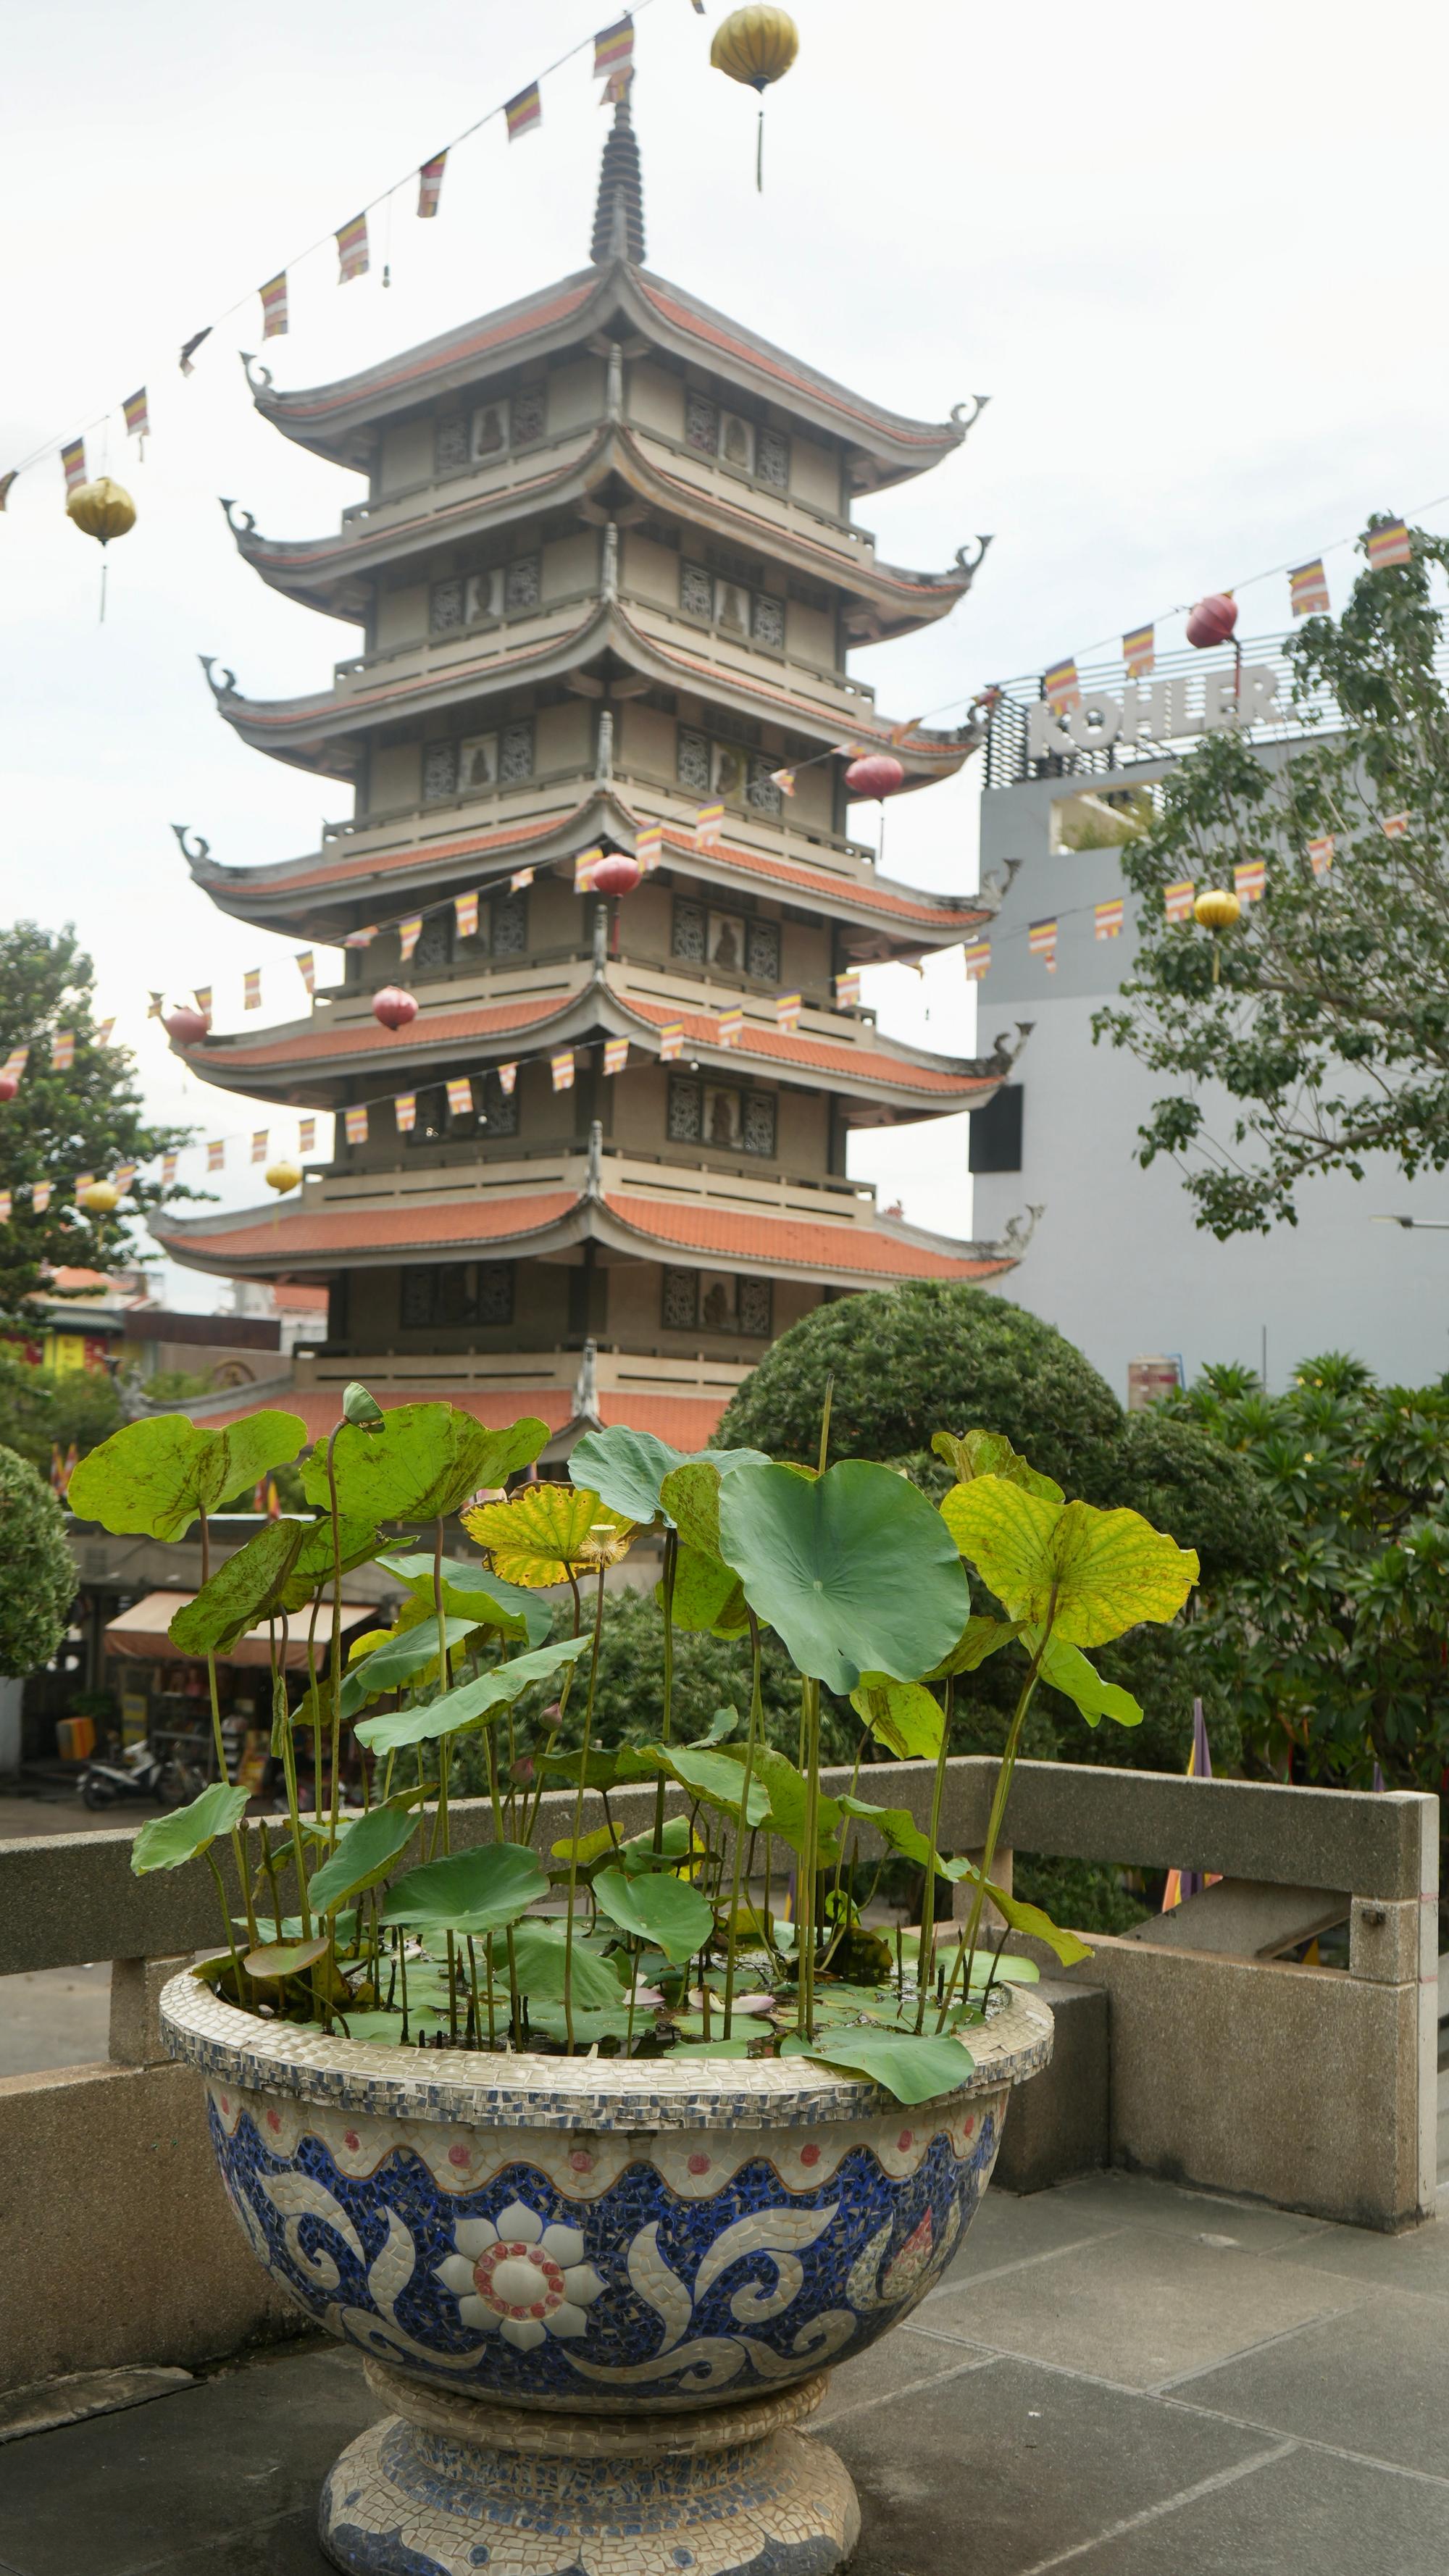 Pagoda and Lotus